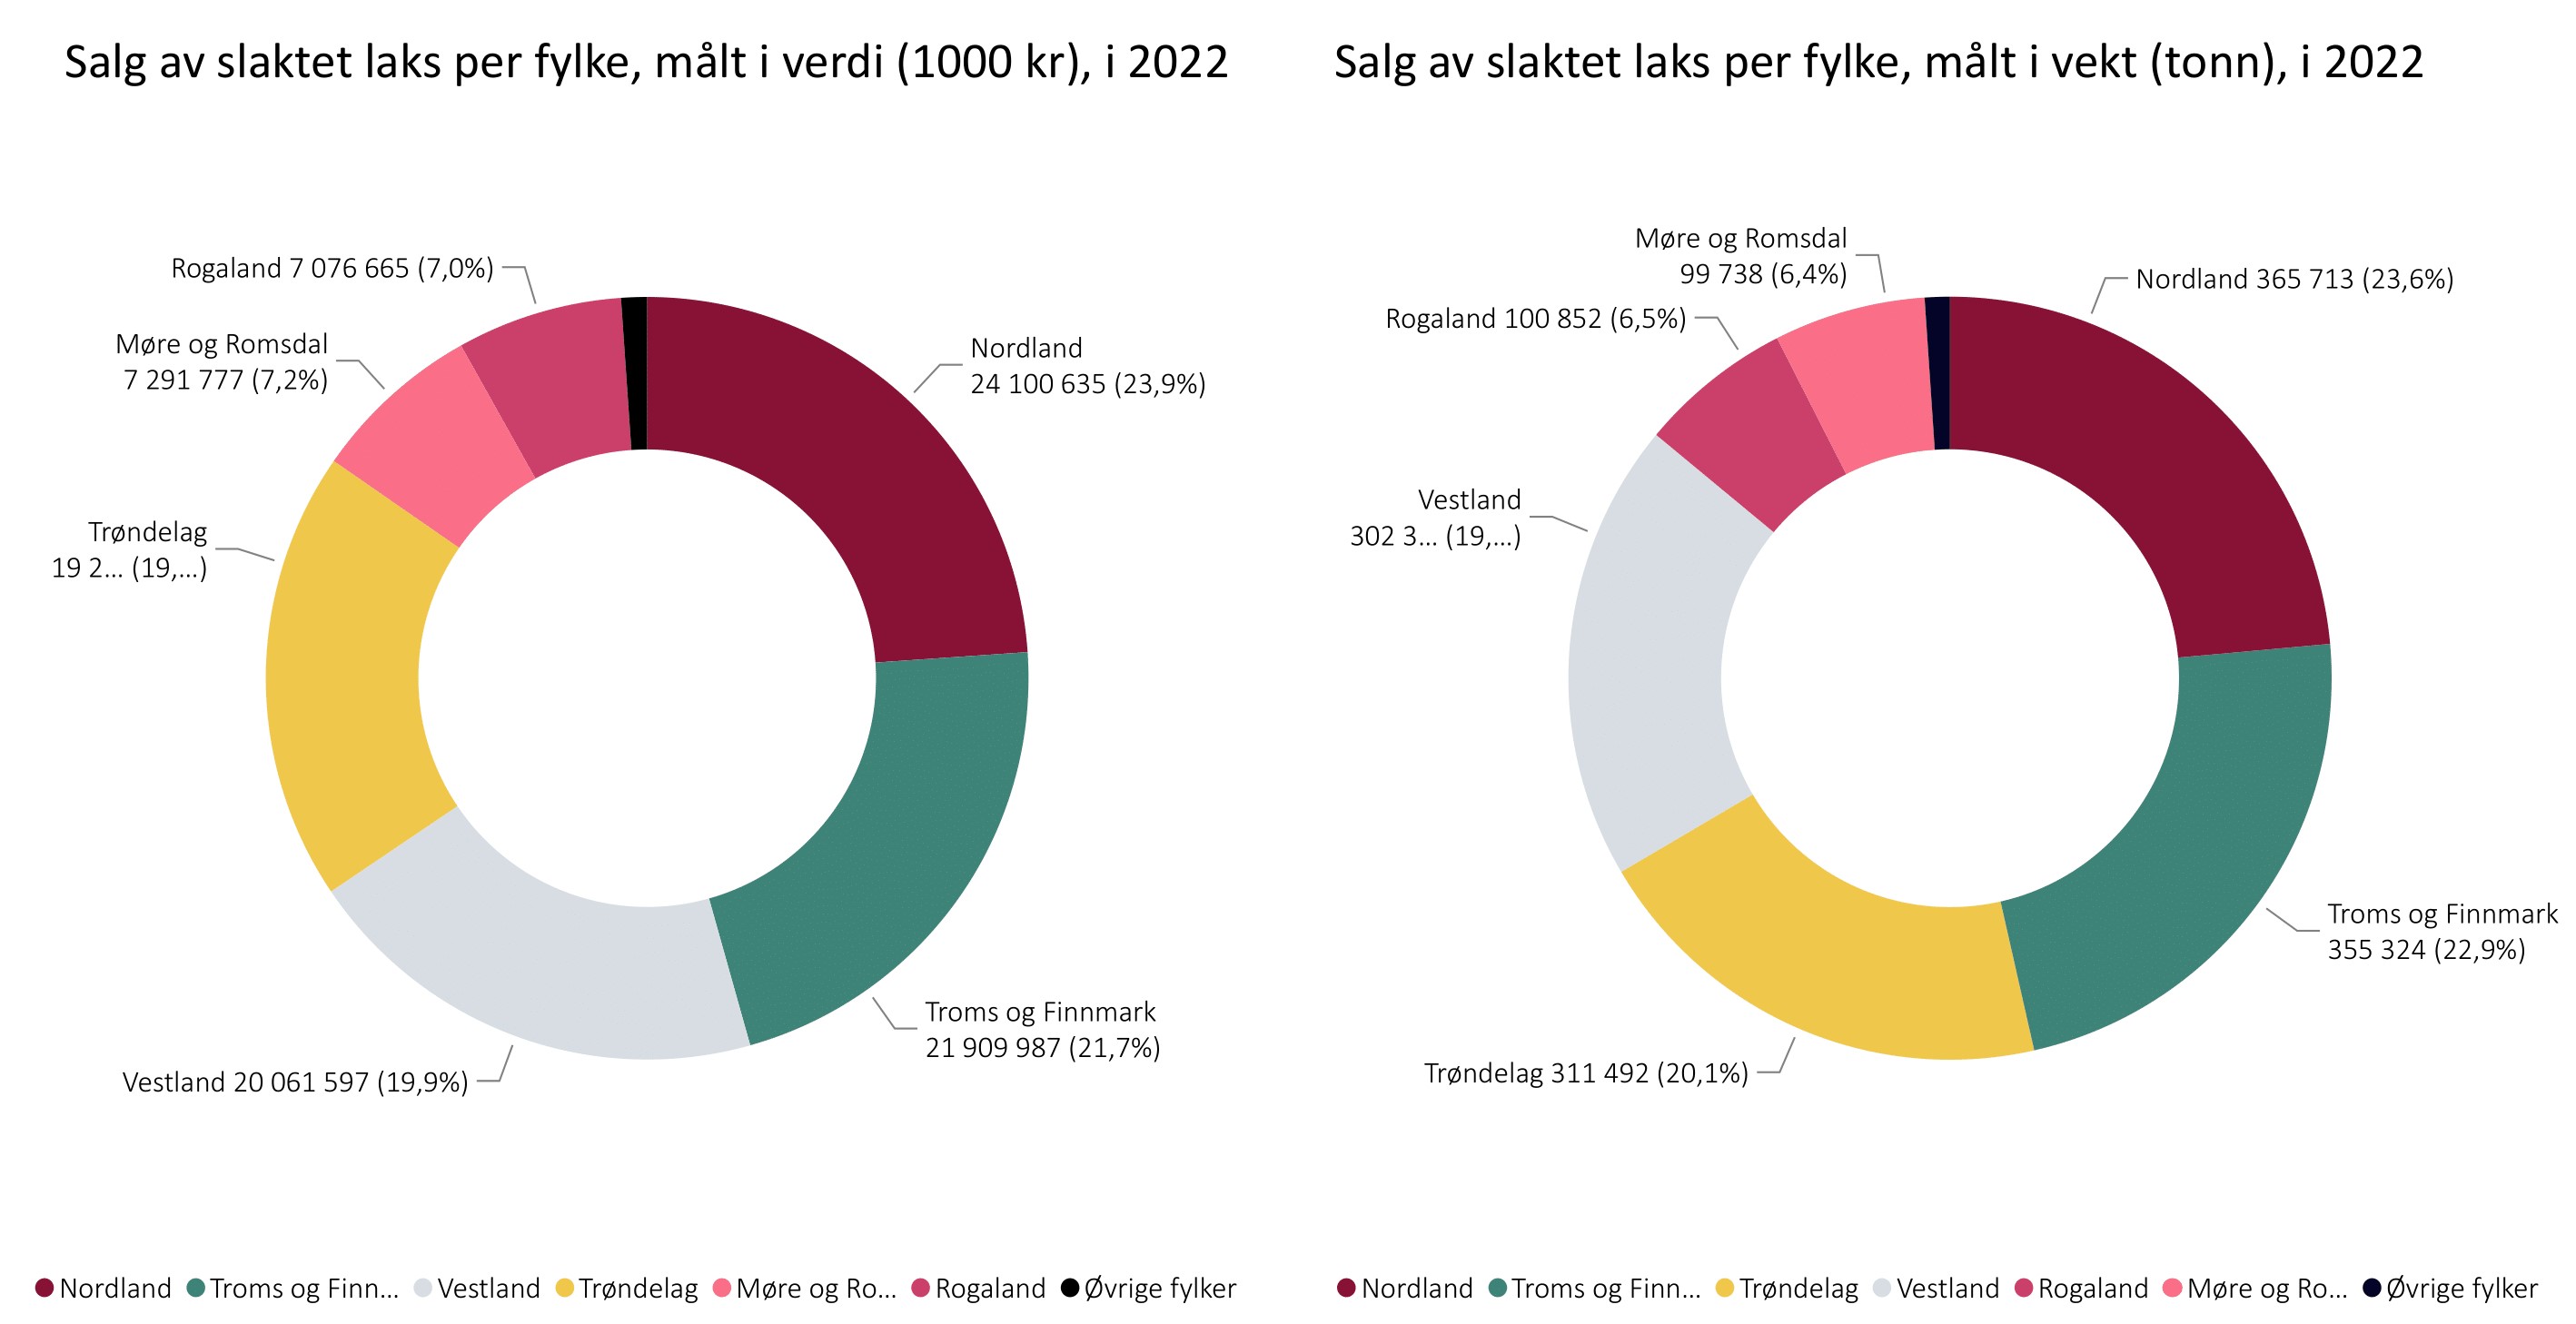 Salg av slaktet laks per fylke,  målt i vekt  og verdi, i 2022